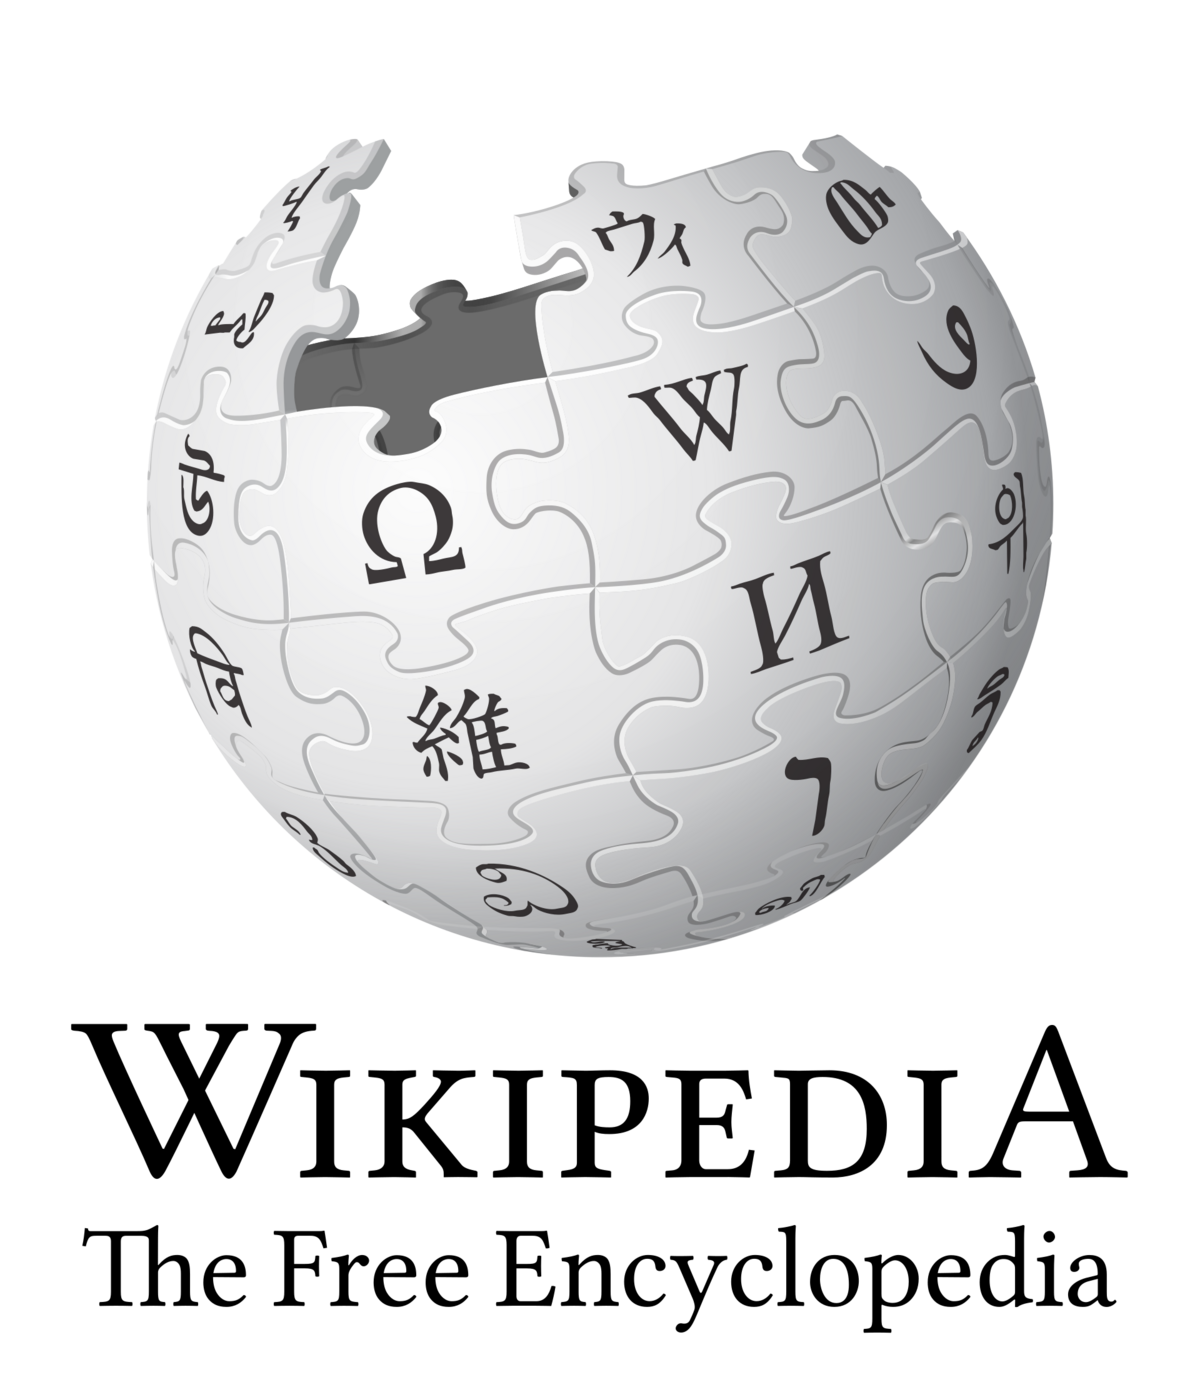 File:Wolf logo final.png - Wikipedia